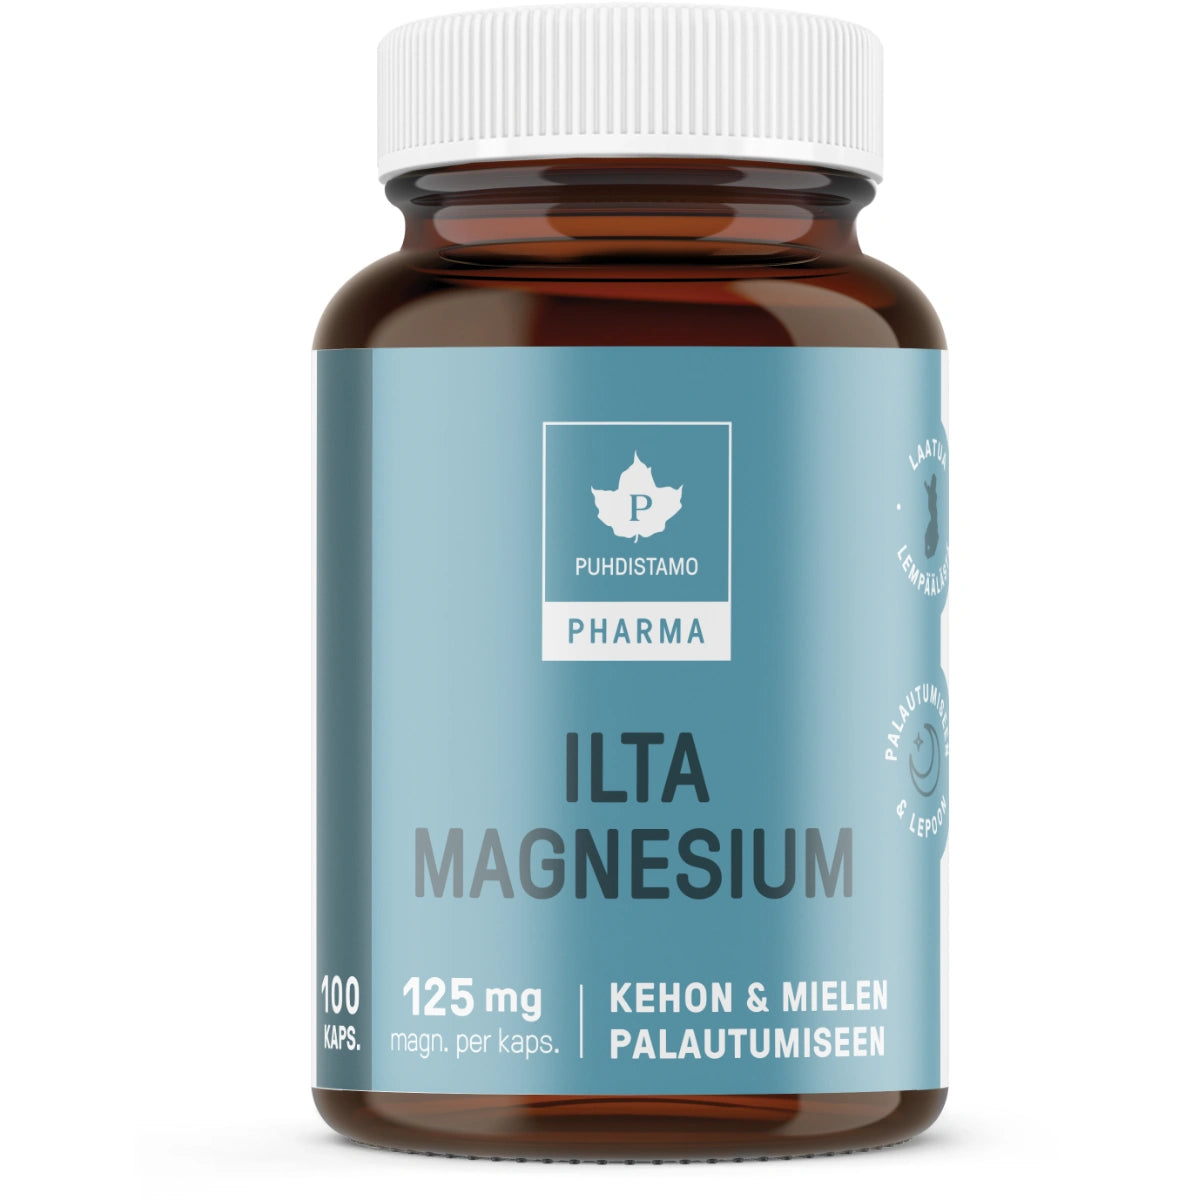 PUHDISTAMO Pharma Ilta Magnesium kapseli 100 kpl magnesium-yrttiuutevalmiste